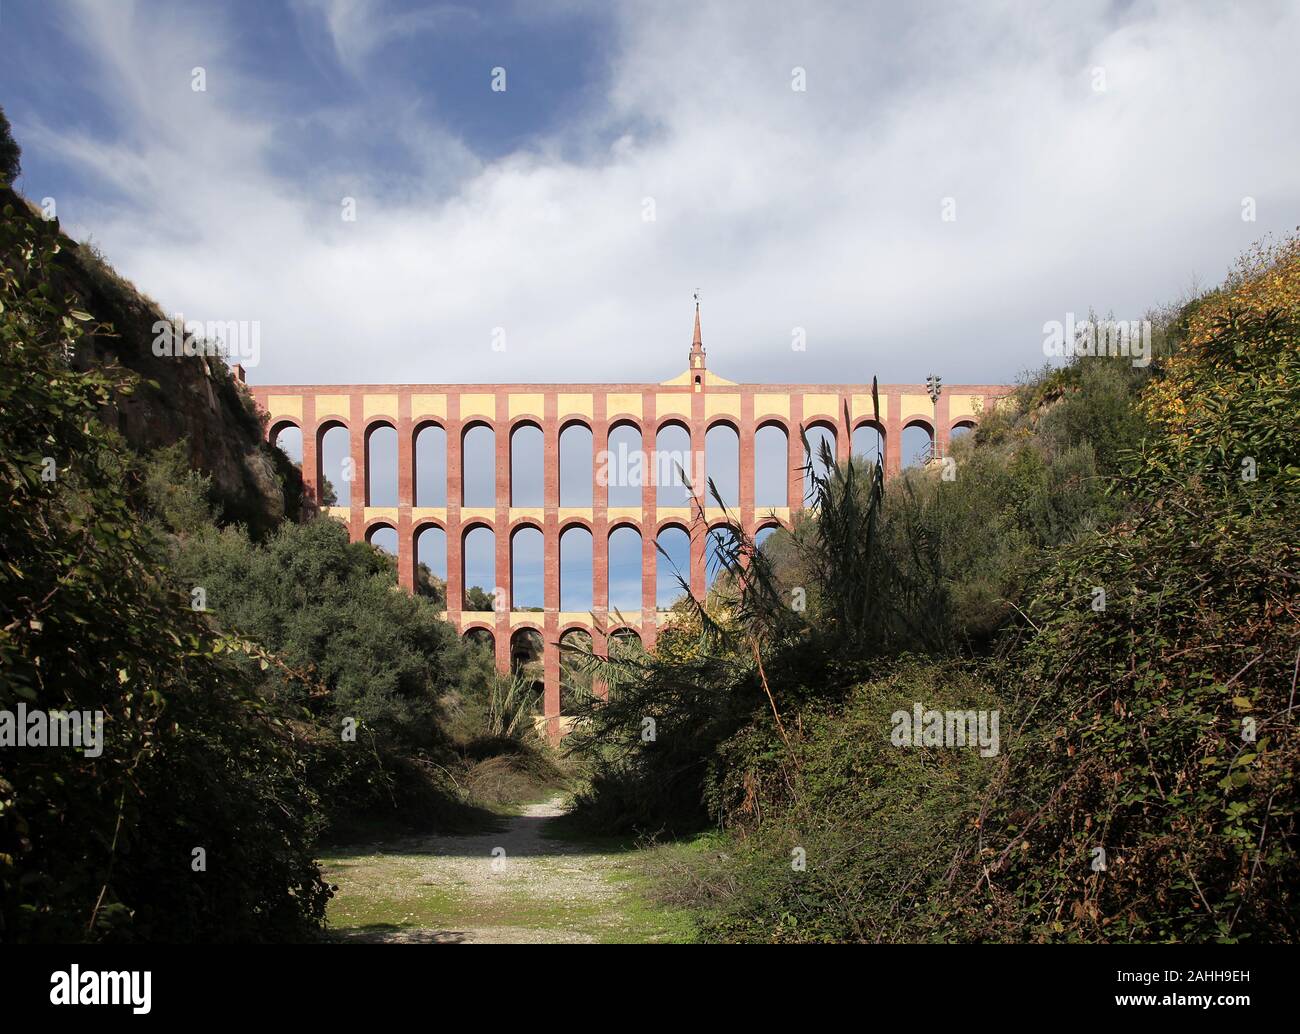 Aqueduc Eagle /Acueducto del Águila construire par l'architecte Francisco Martín Cantarero.près de Maro et Nerja Andalousie Espagne.Pour fournir de l'eau Usine de sucre. Banque D'Images